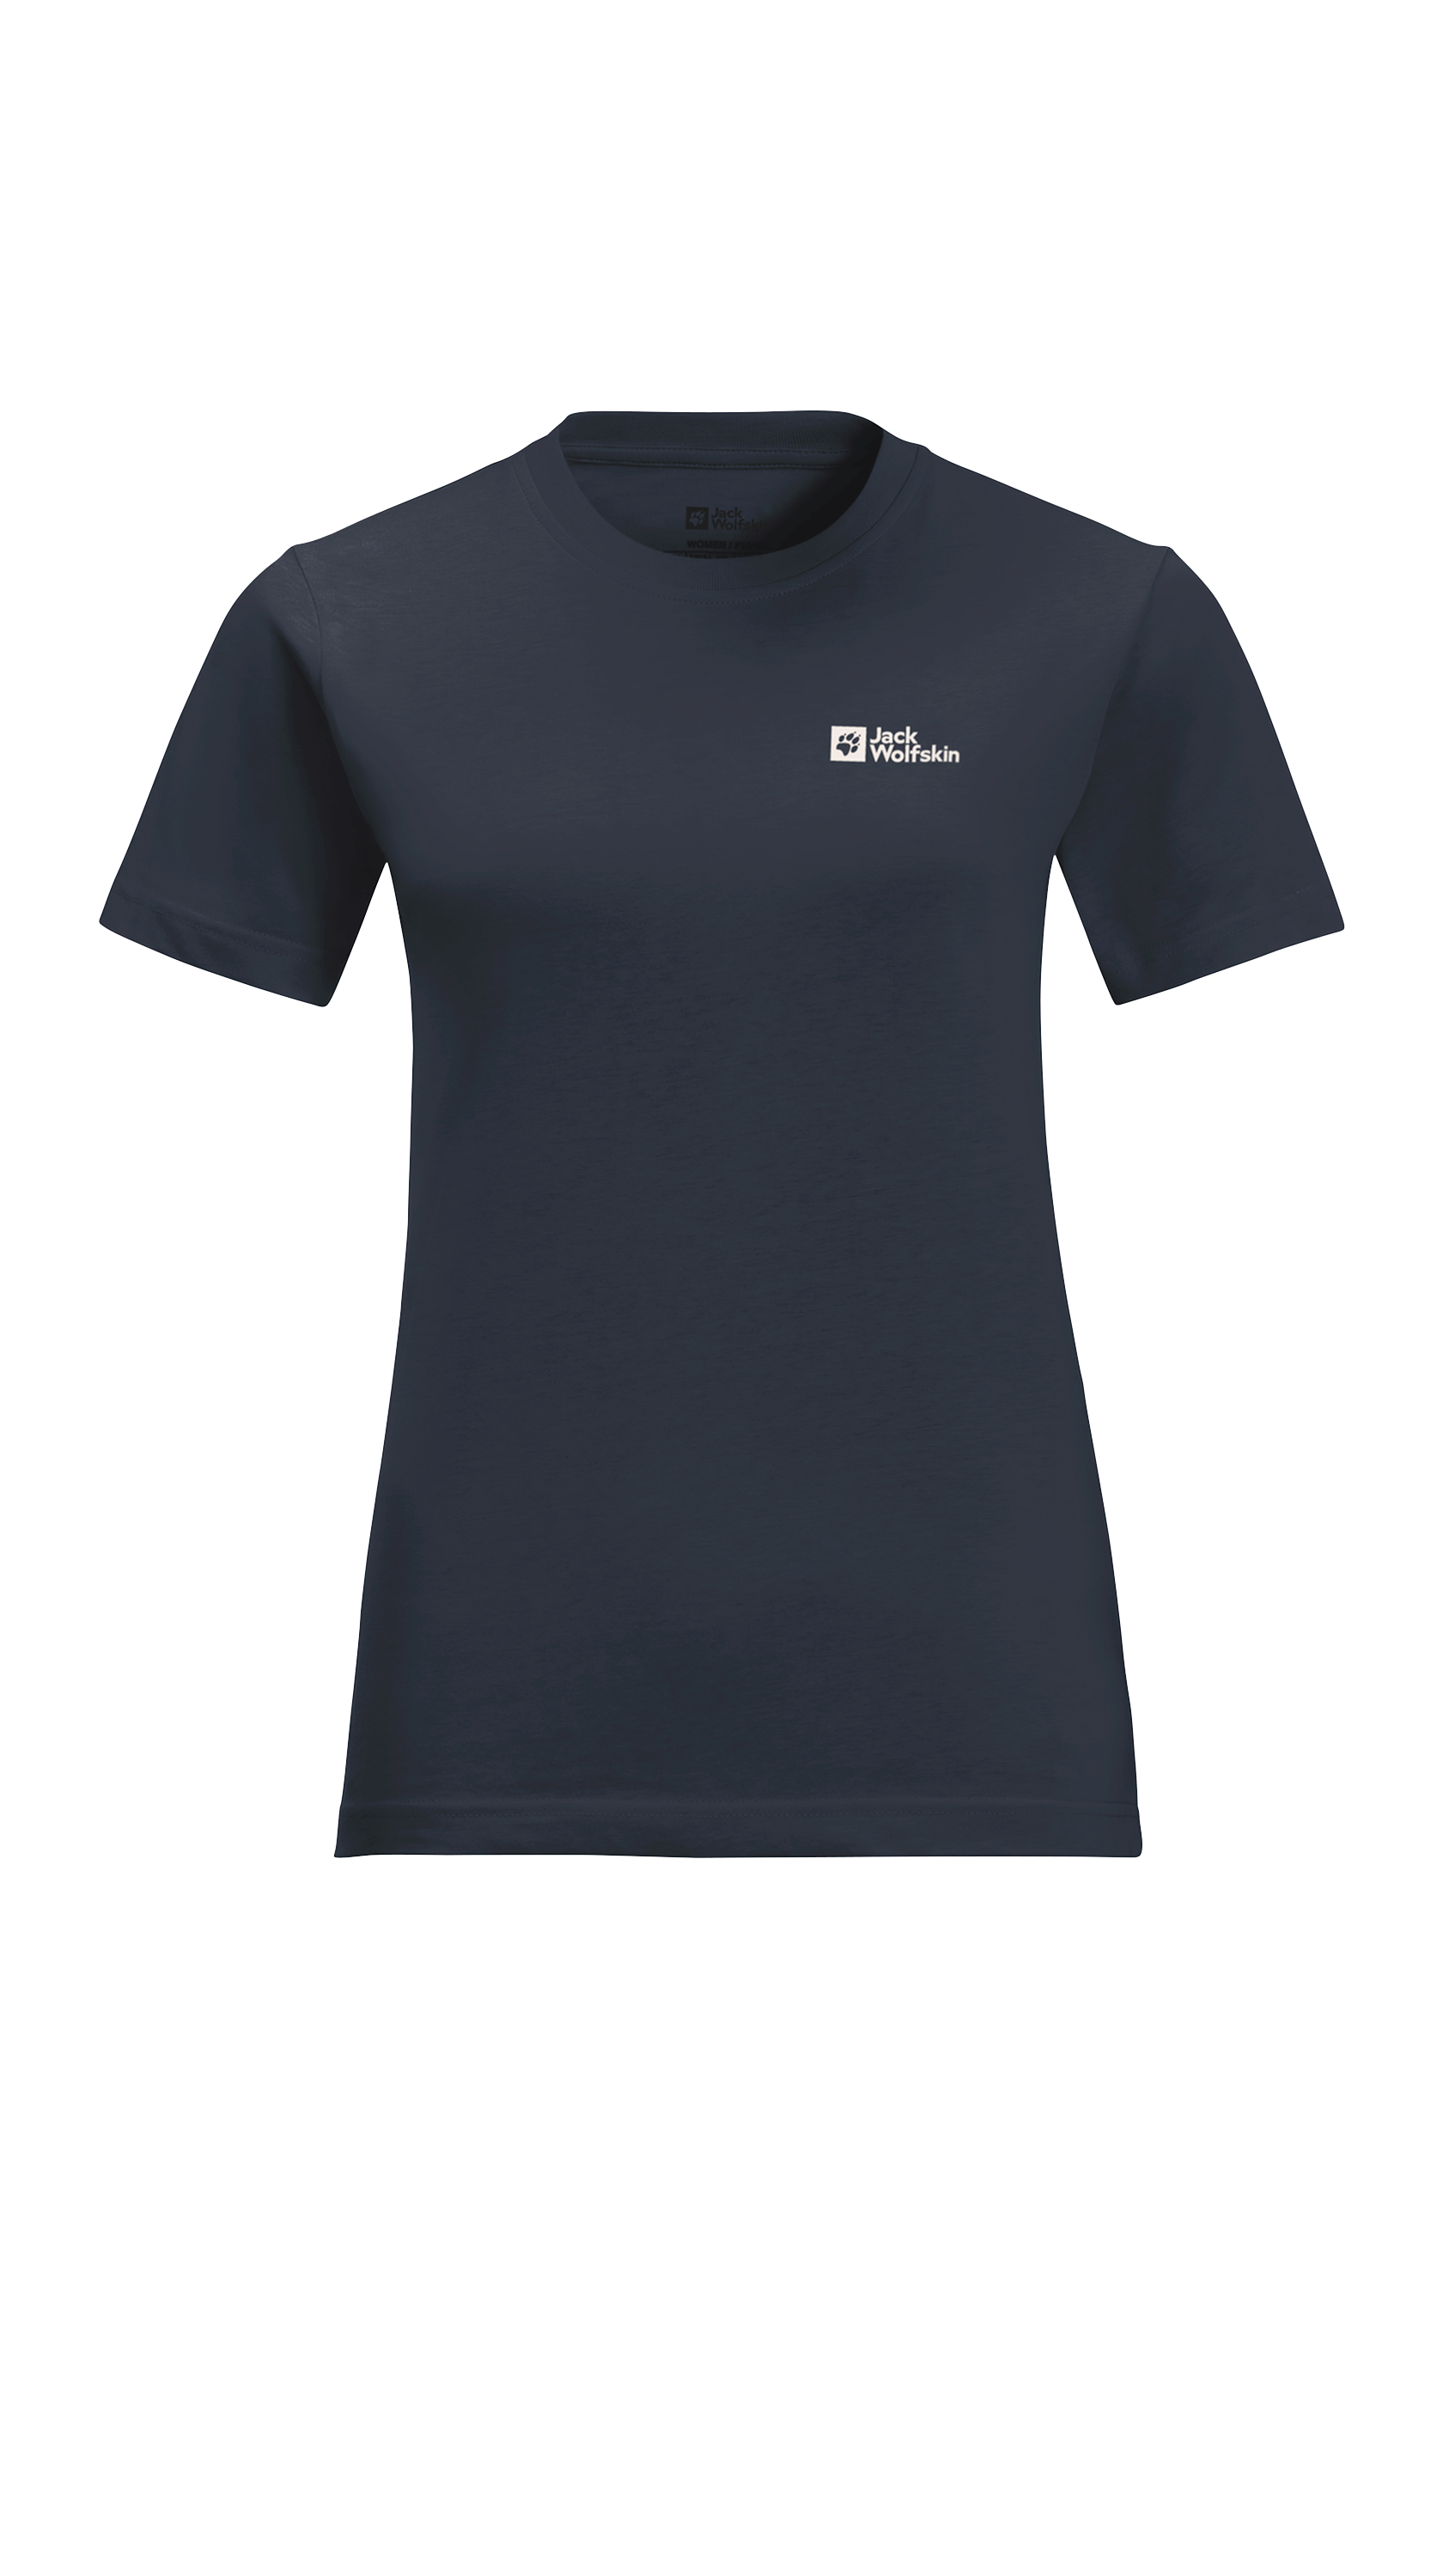 Jack Wolfskin T-Shirt »ESSENTIAL T W«, weiches, klassisches T-Shirt aus atmungsaktiver Bio-Baumwolle